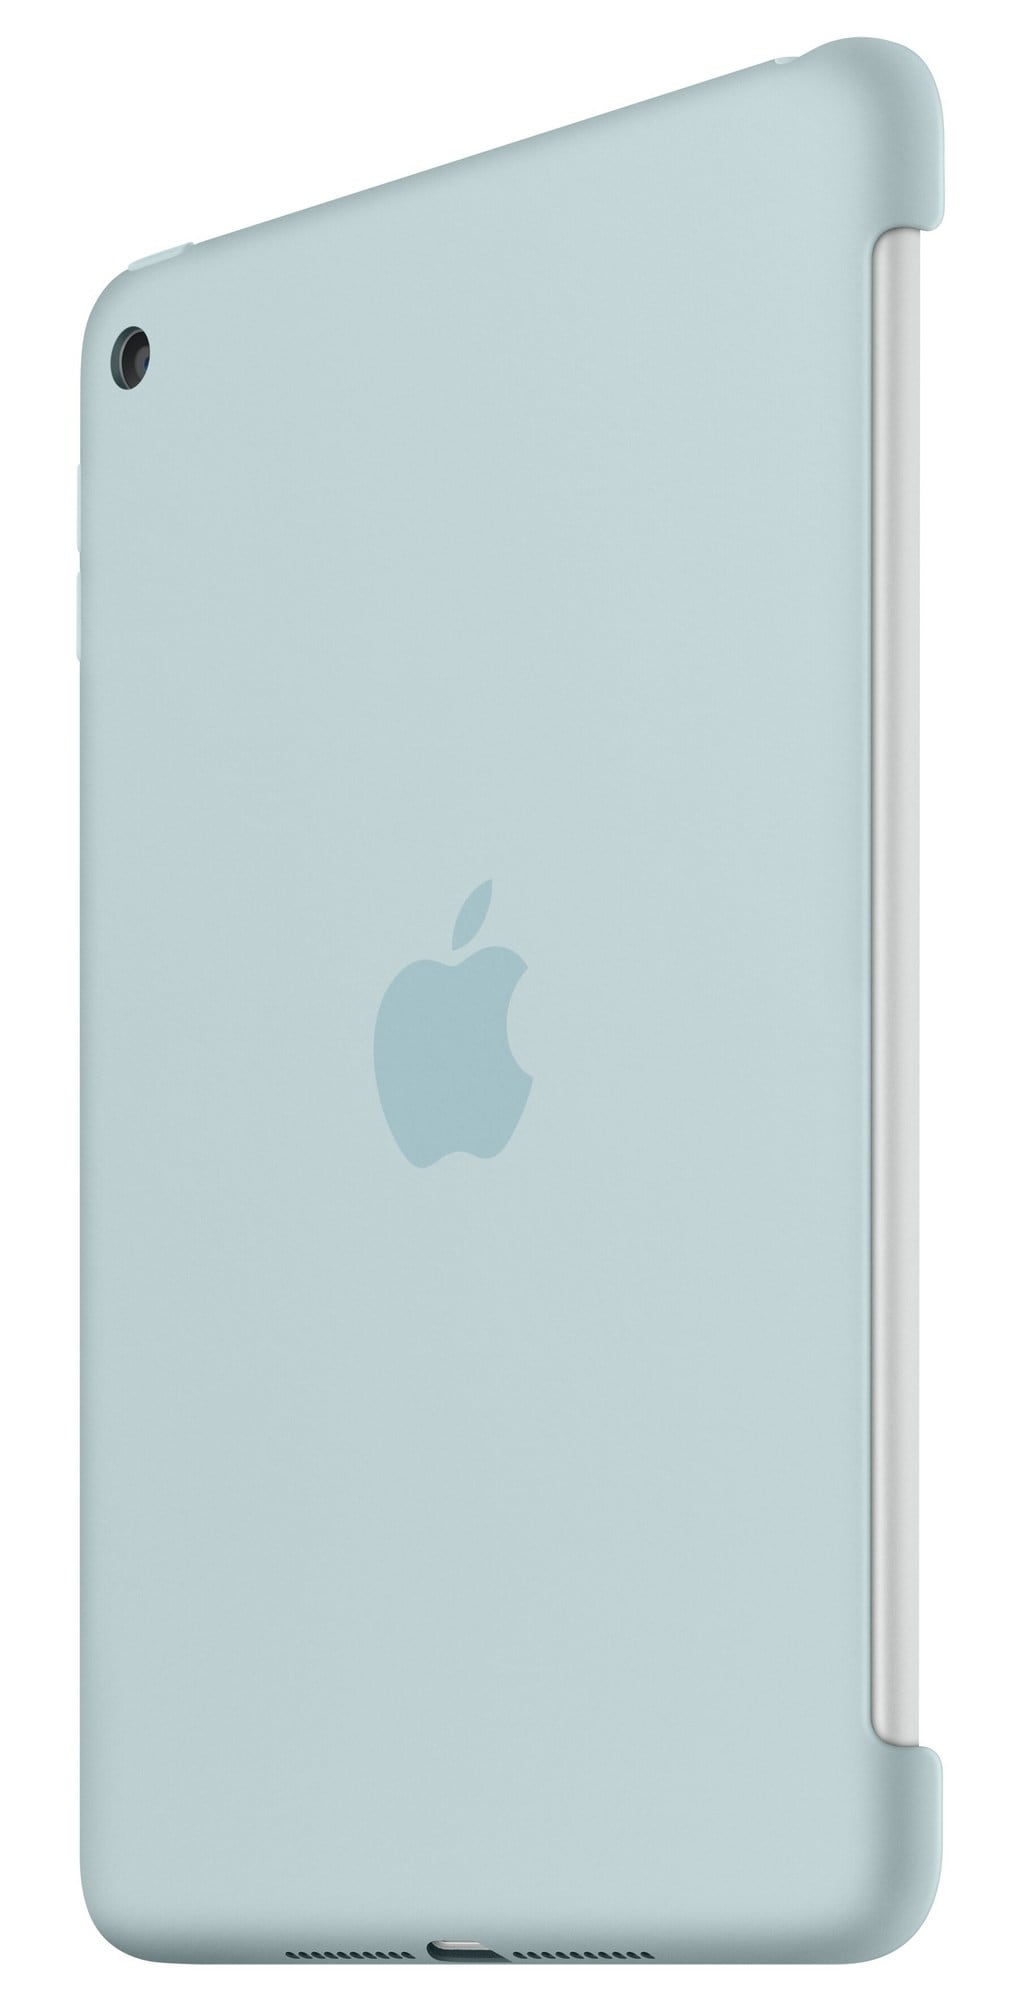 iPad mini 4 silikoneetui - turkis - iPad og tablet tilbehør - Elgiganten